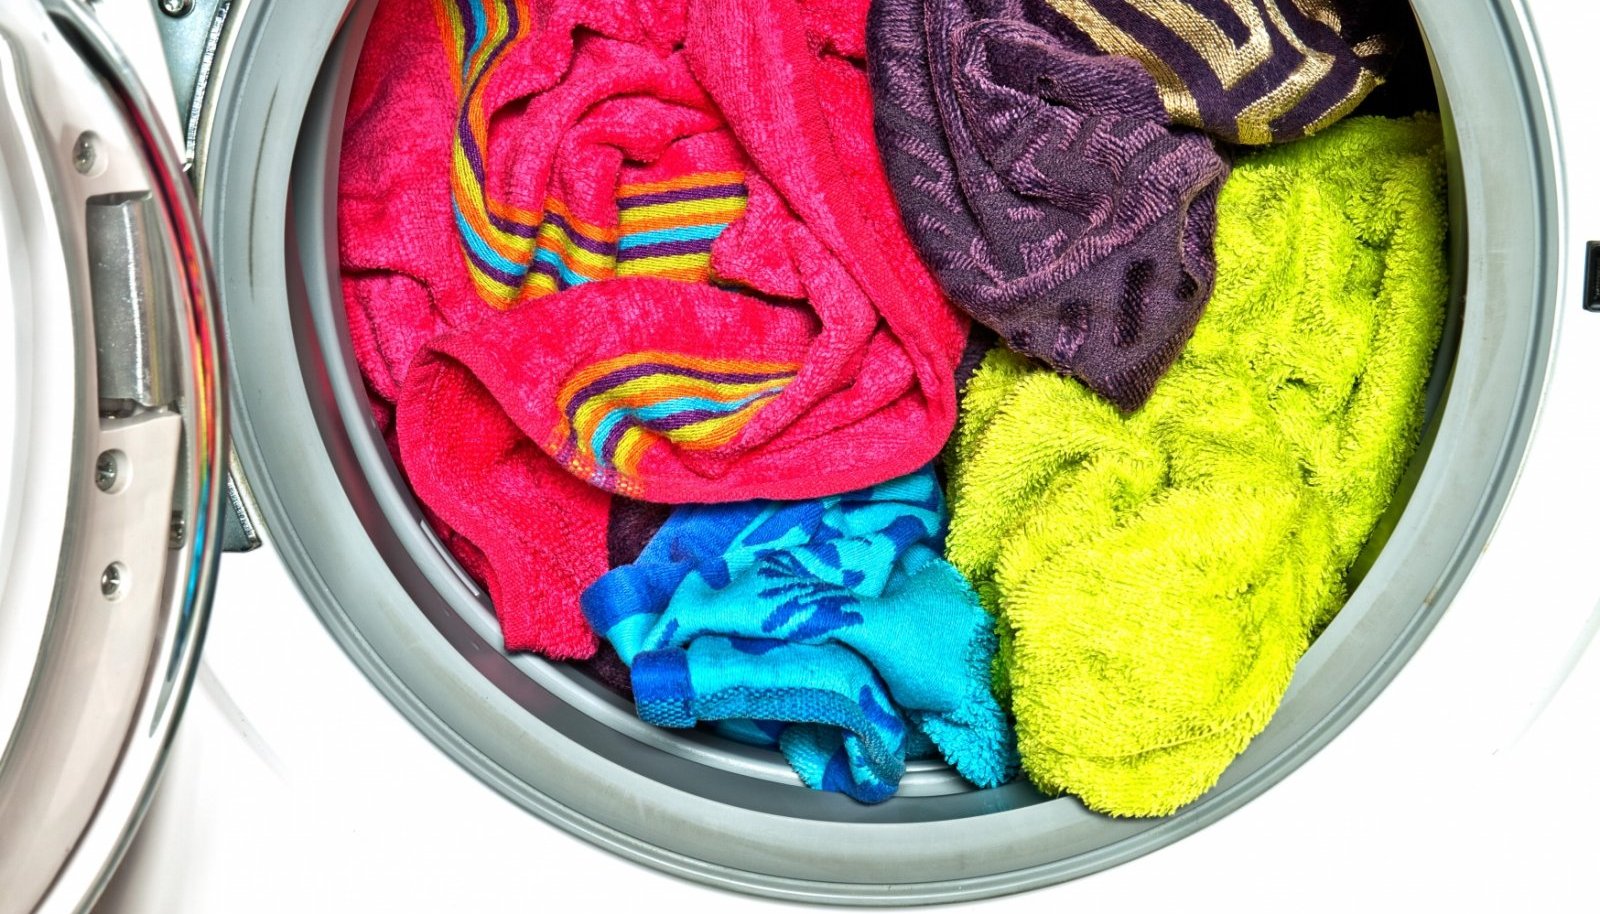 Постирать шарф. Цветные вещи. Мятое белье в машинке. Вонючее полотенце. Одежда после стирки пахнет затхлостью.